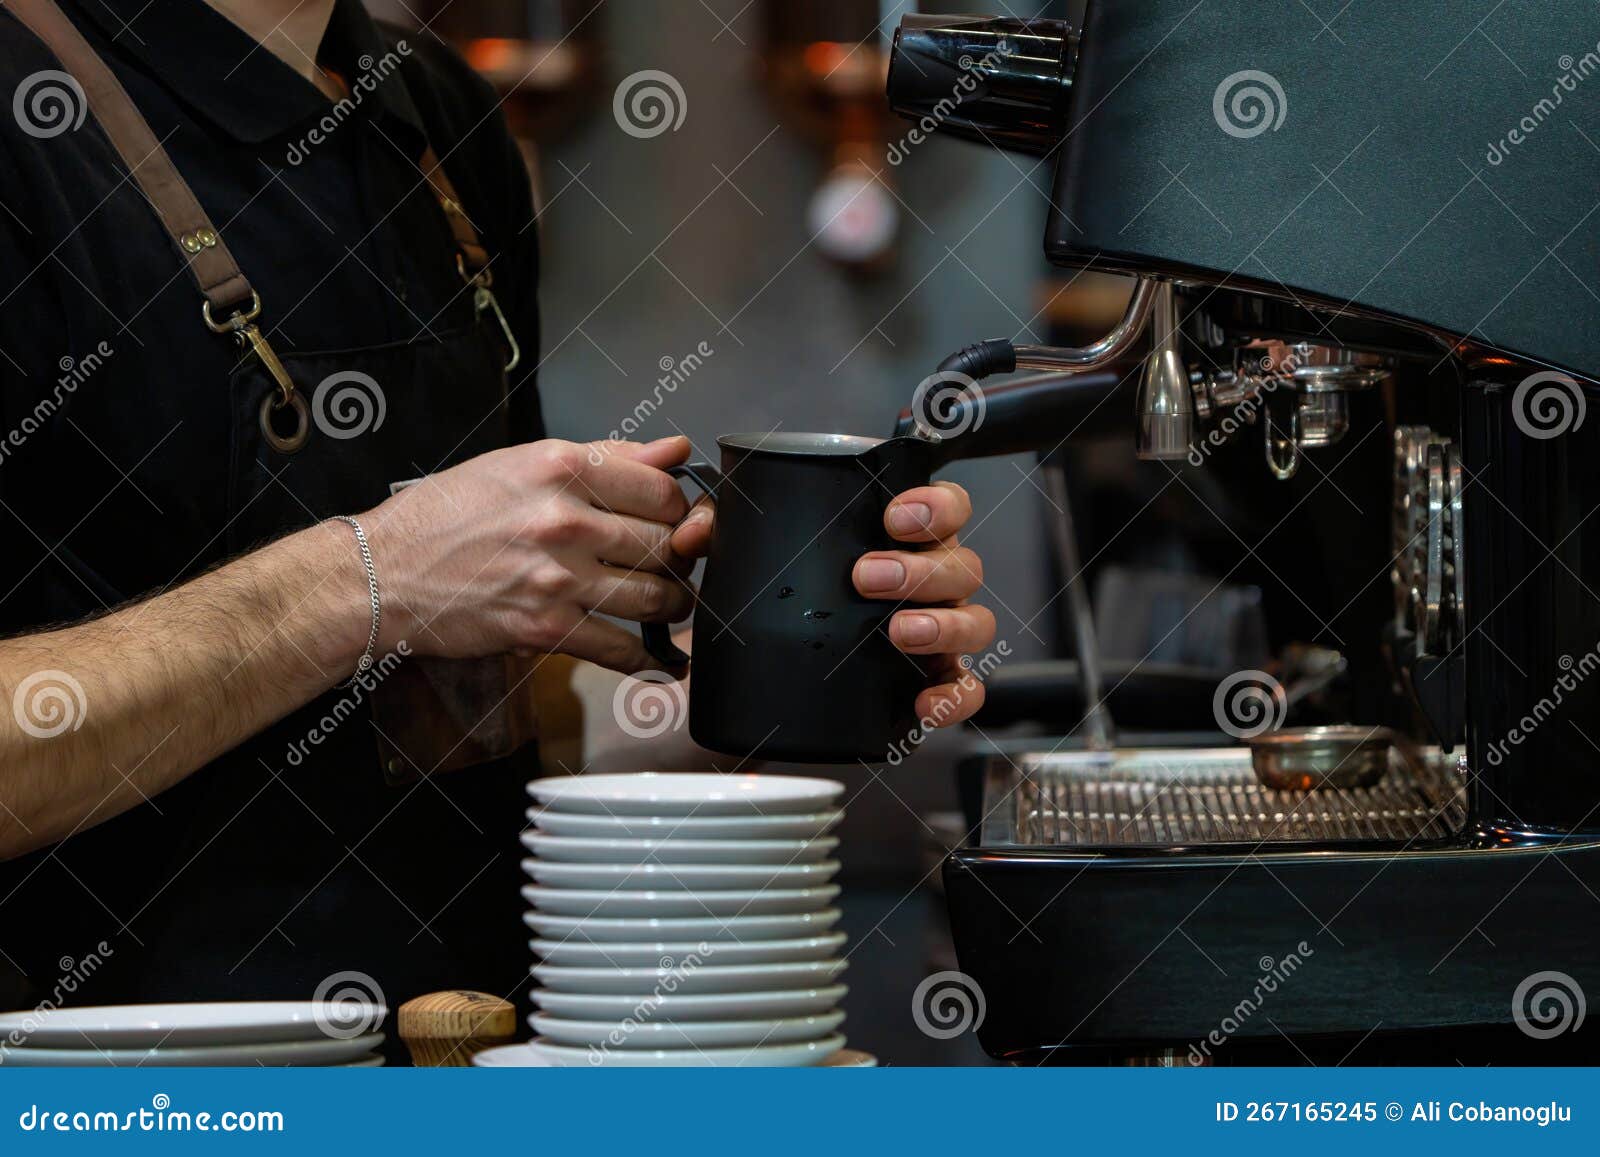 https://thumbs.dreamstime.com/z/leche-de-espuma-barista-para-hacer-caf%C3%A9-manos-baristas-frente-la-cafetera-267165245.jpg